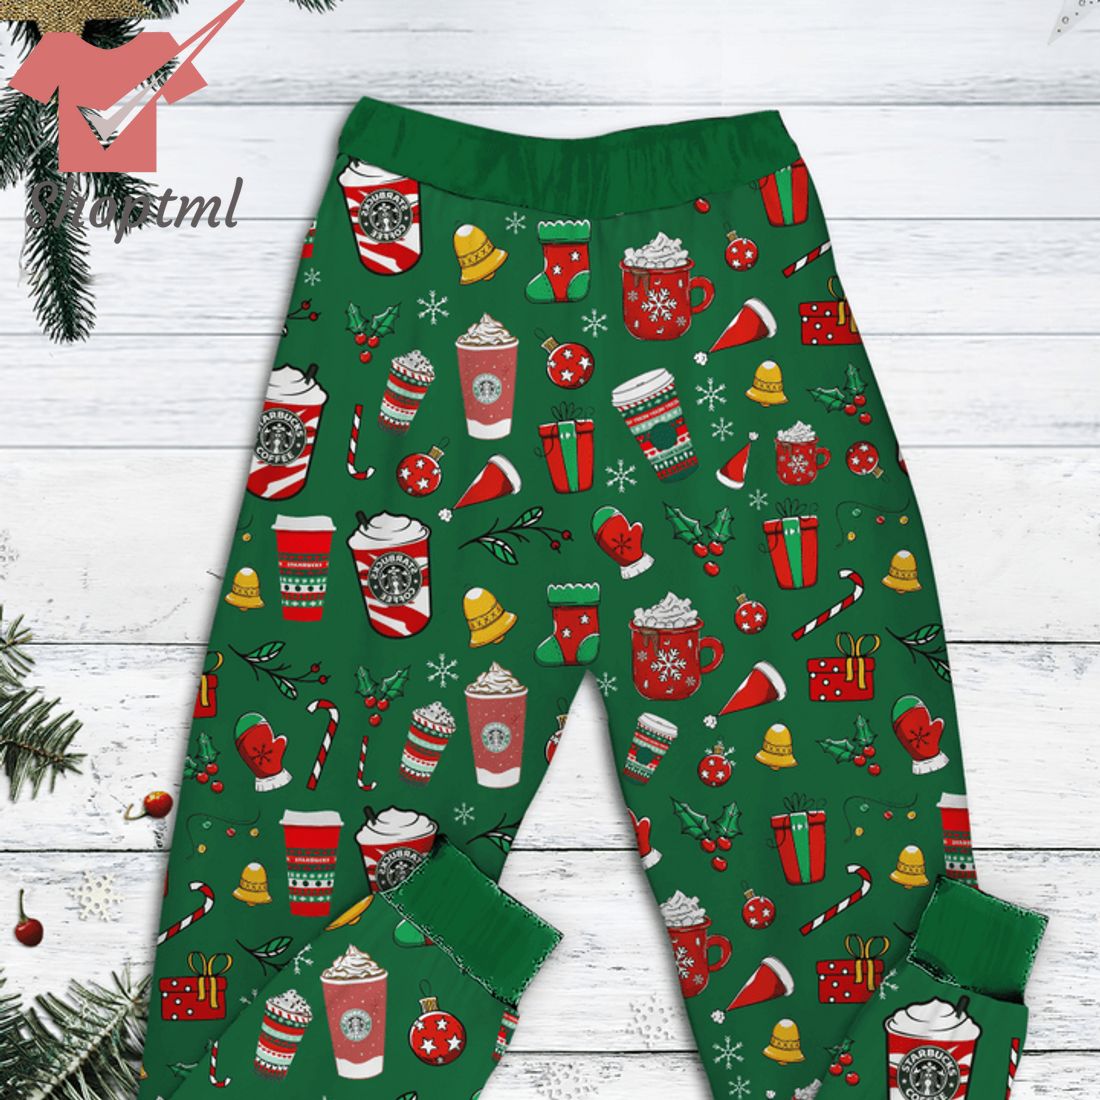 Starbucks All I Want For christmas pajamas set